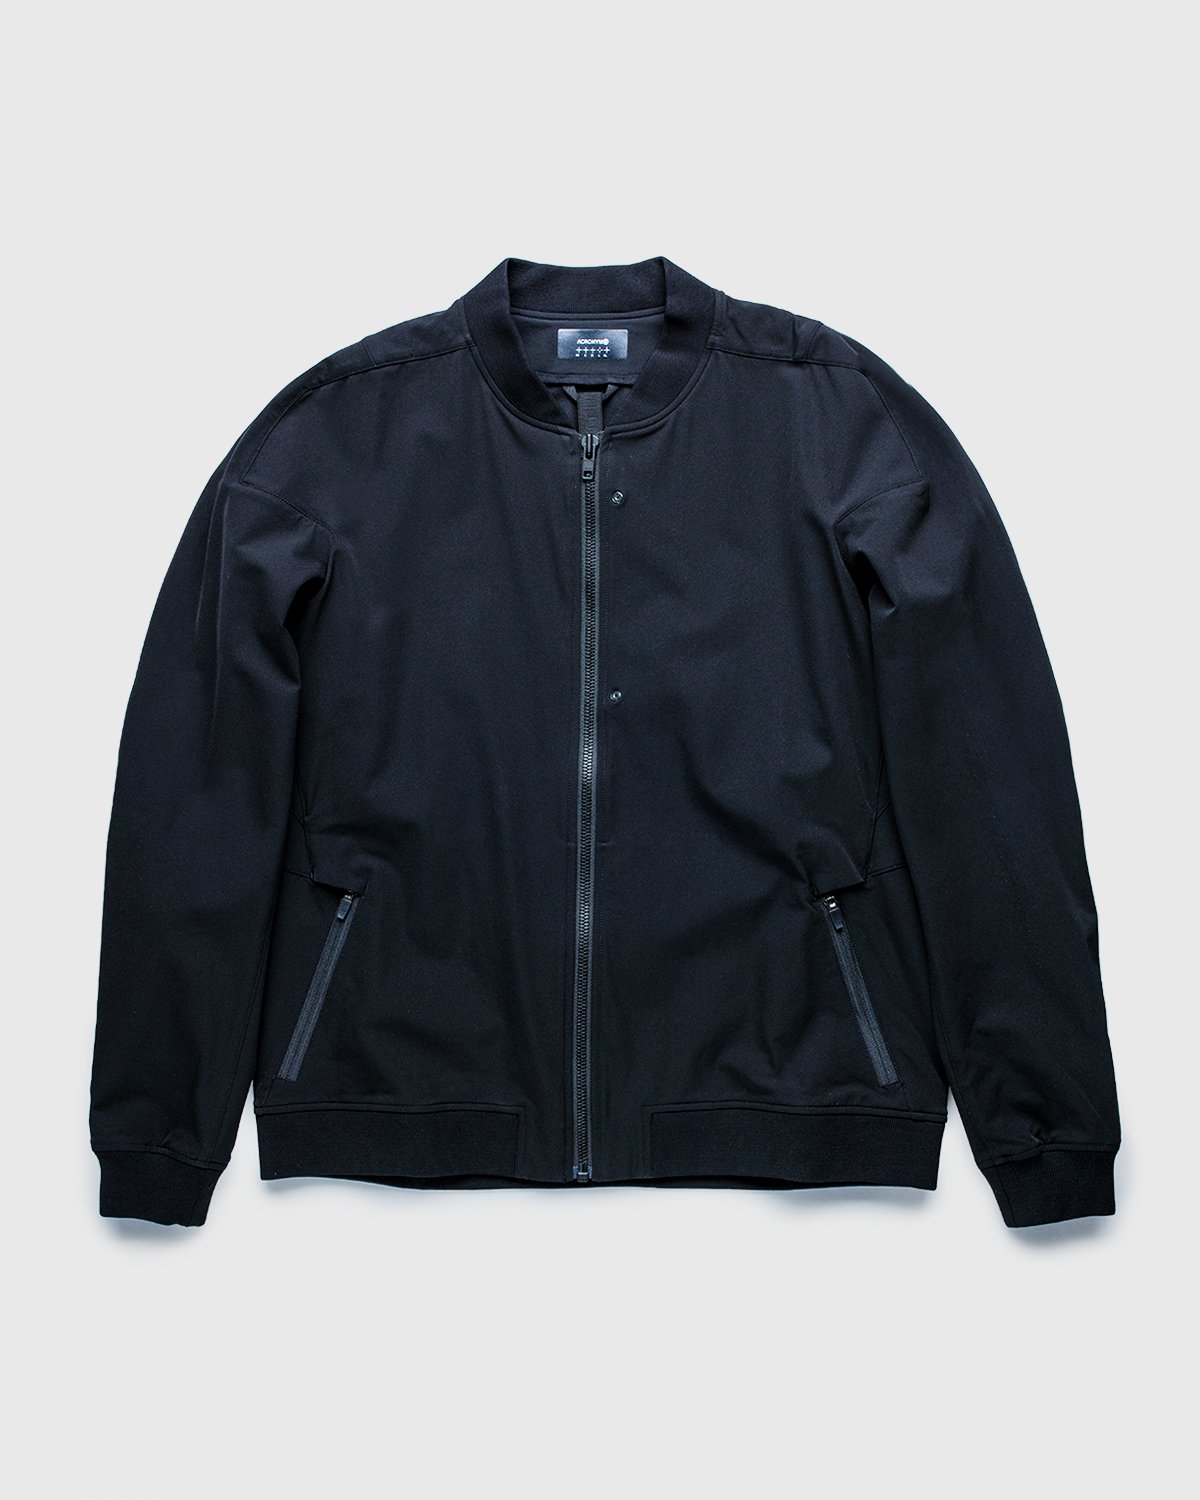 ACRONYM - J90-DS Jacket Black - Clothing - Black - Image 1